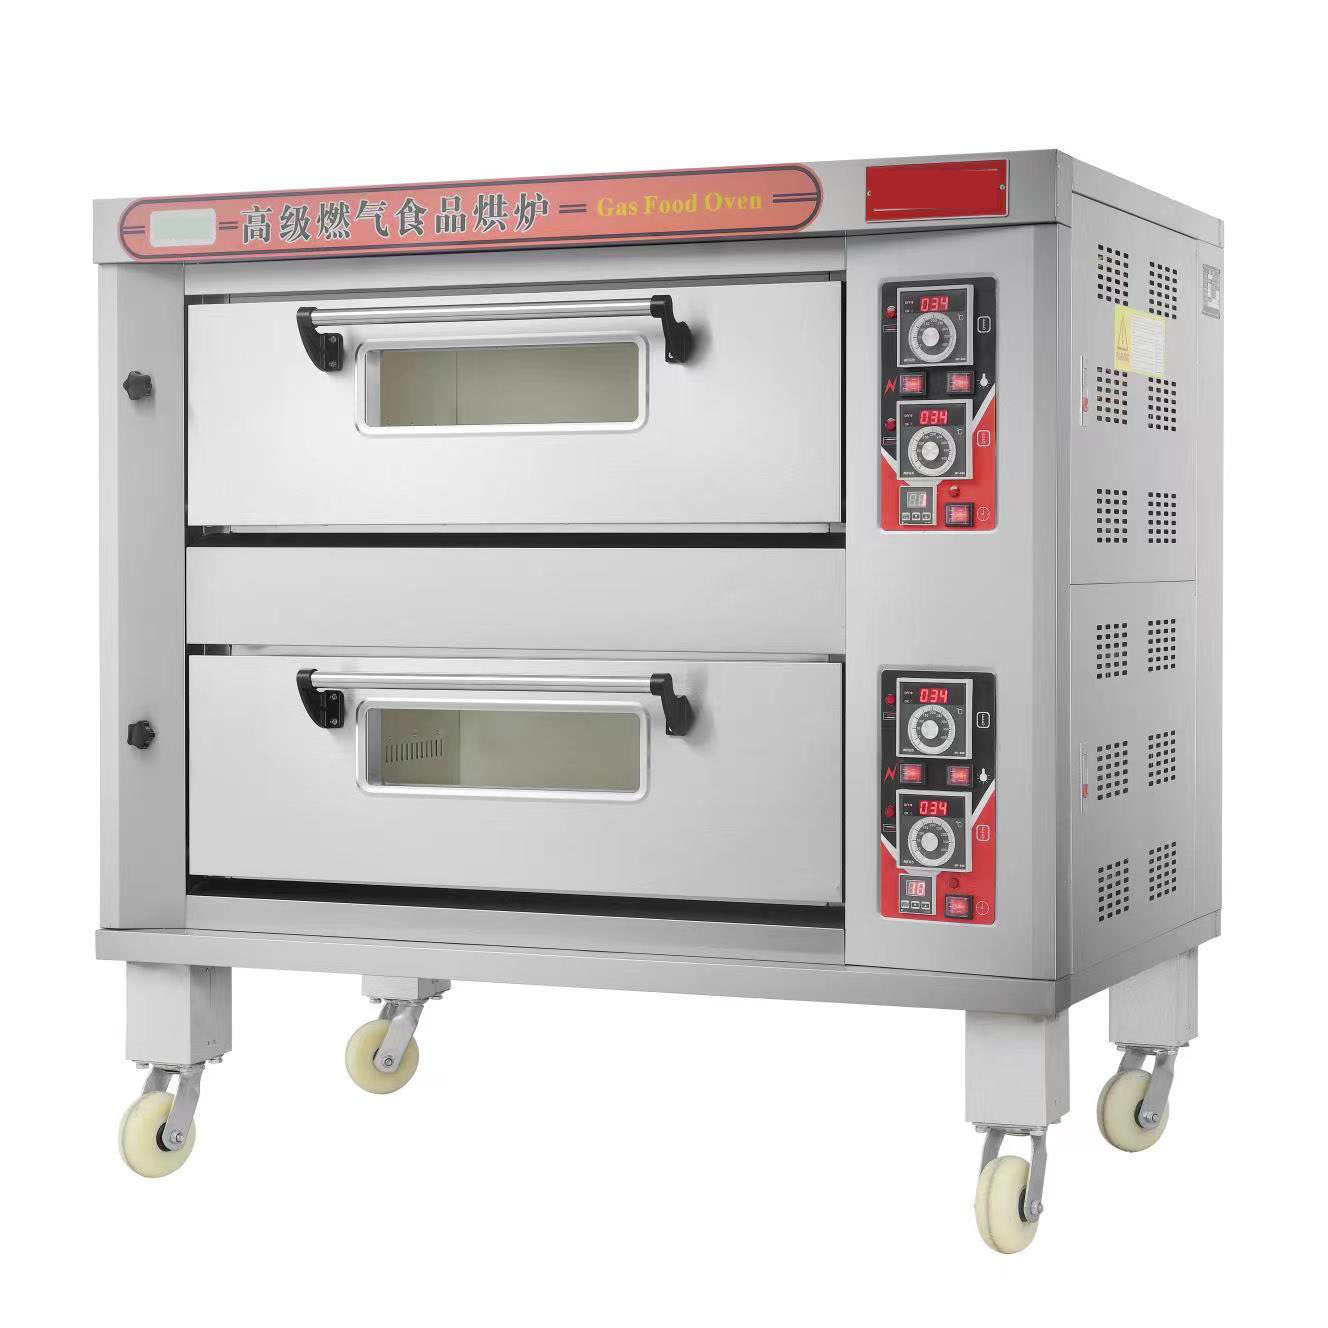 商用中大型燃气烤箱 外贸优质烤箱 烤面包烘焙设备 多层多盘可选